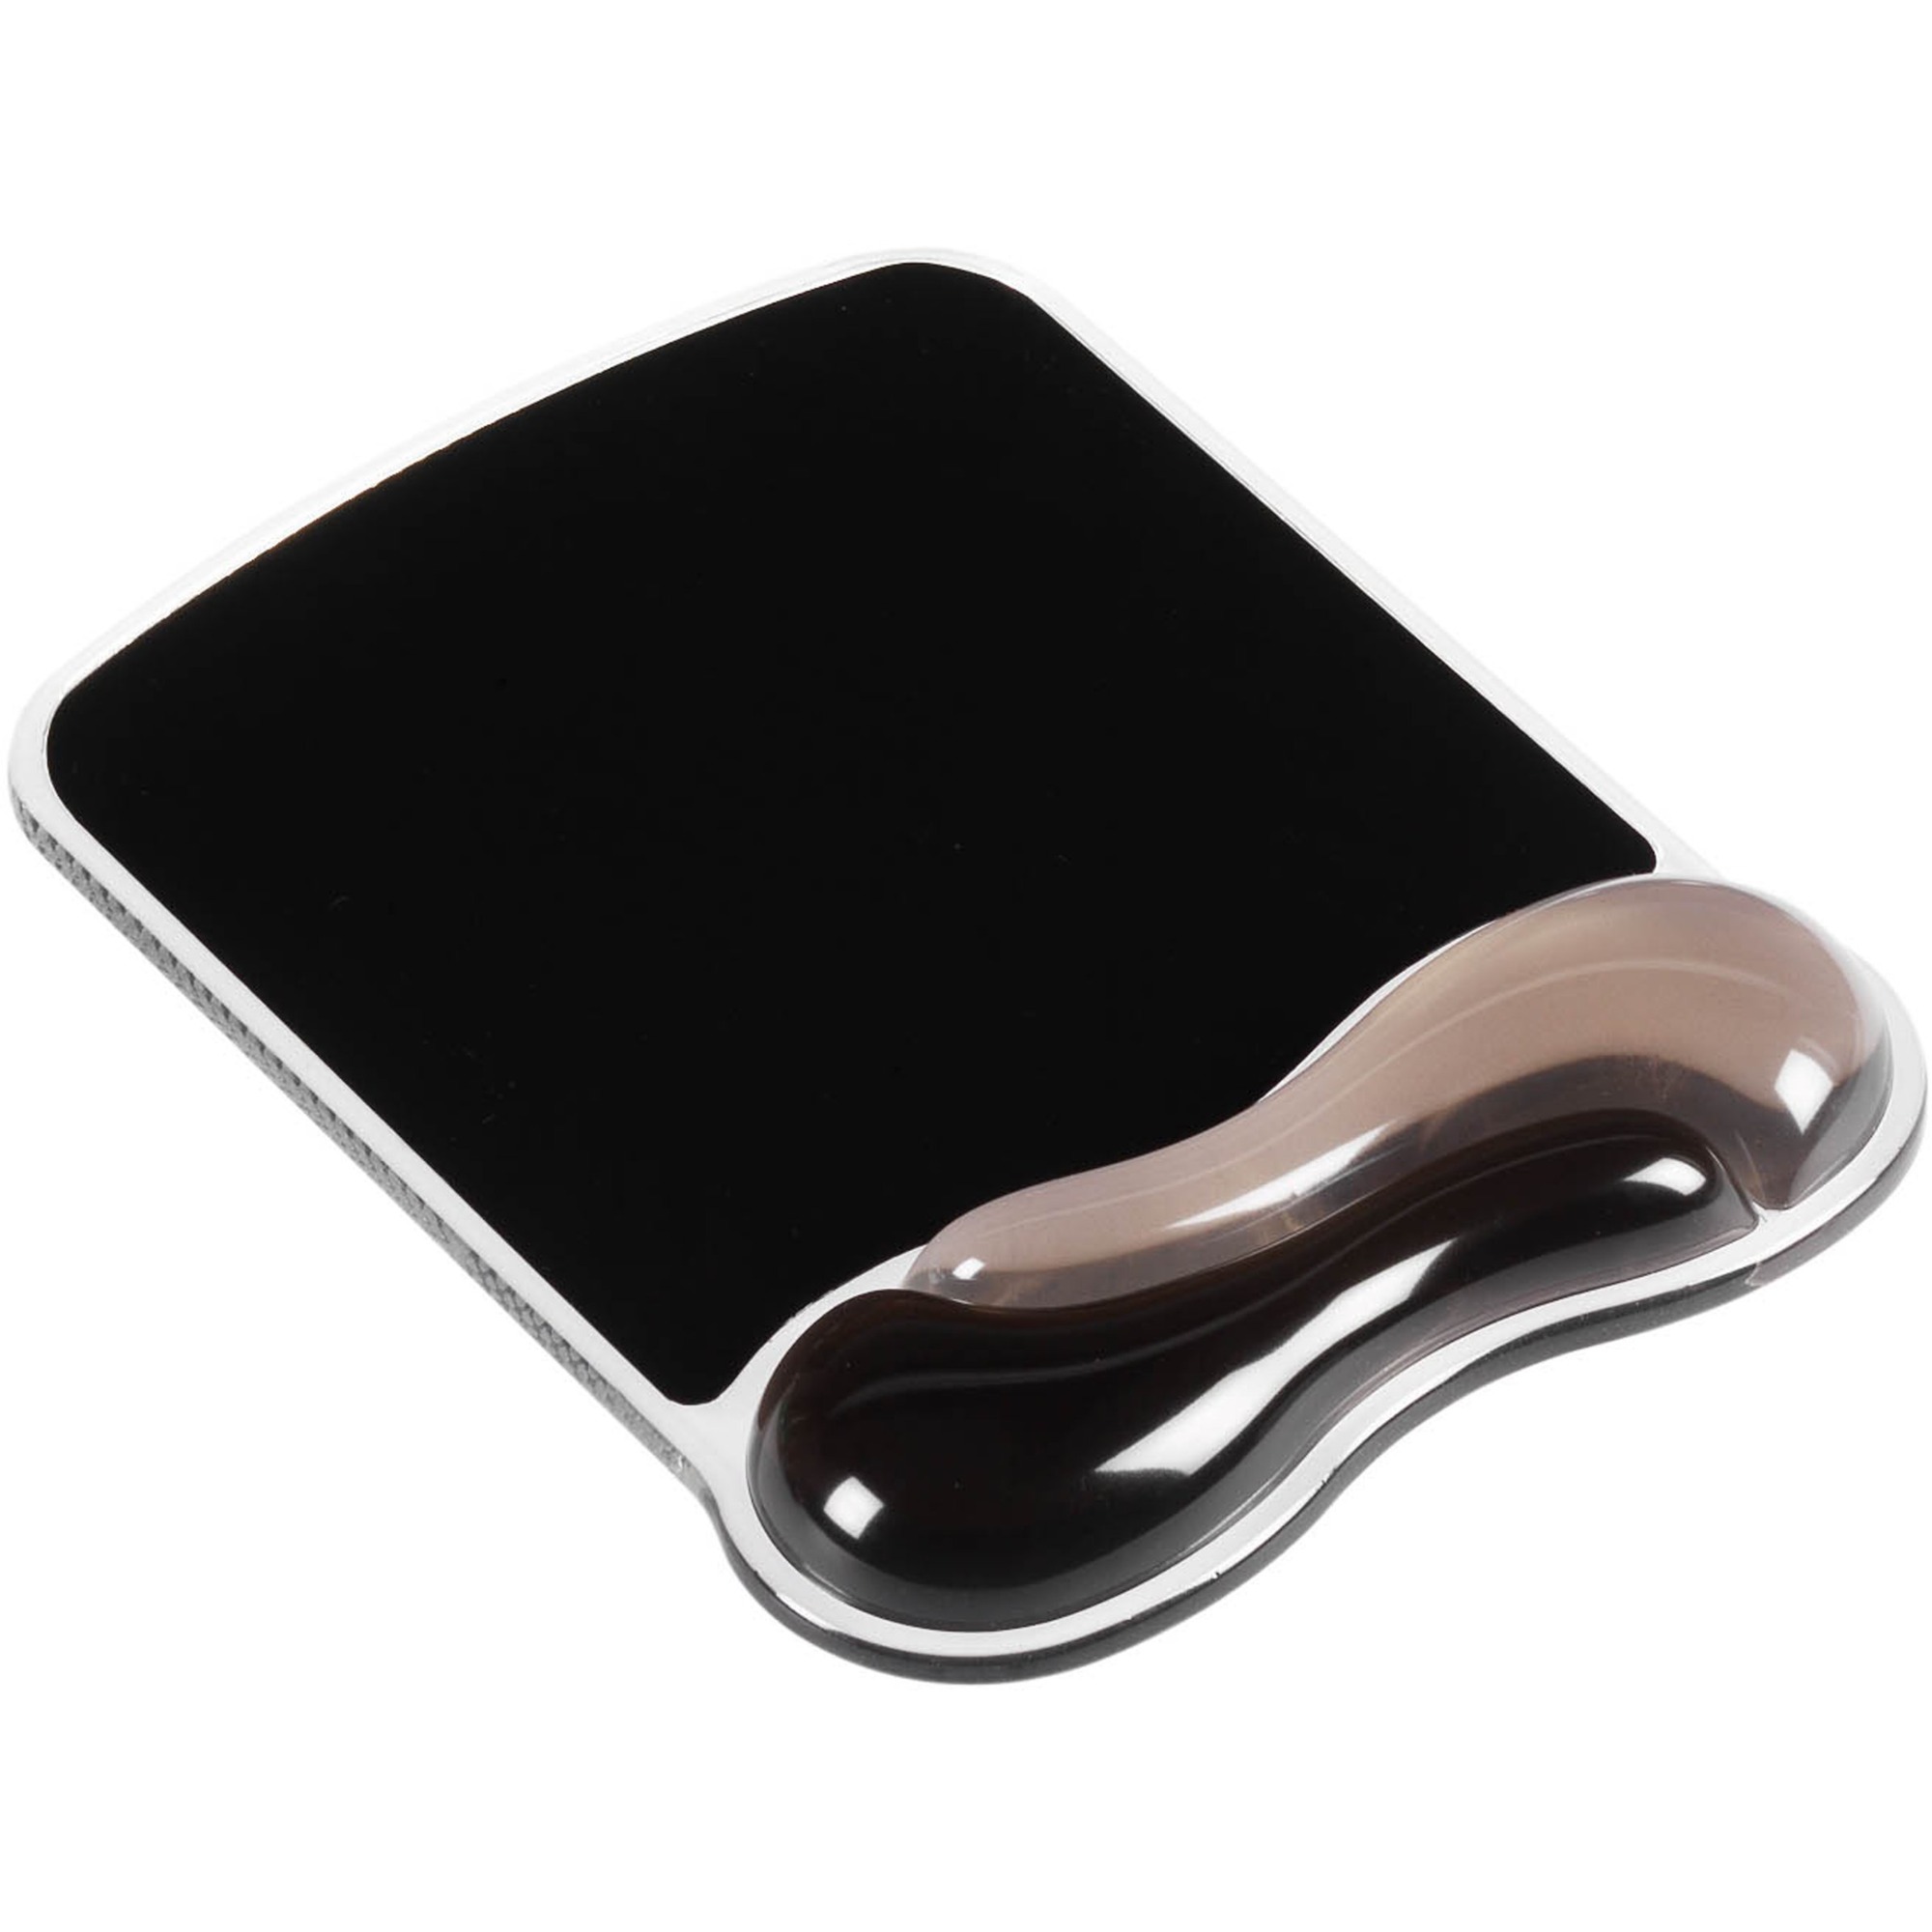 Image of Alternate - Duo Gel Mouse Pad Wrist Rest, Mauspad online einkaufen bei Alternate